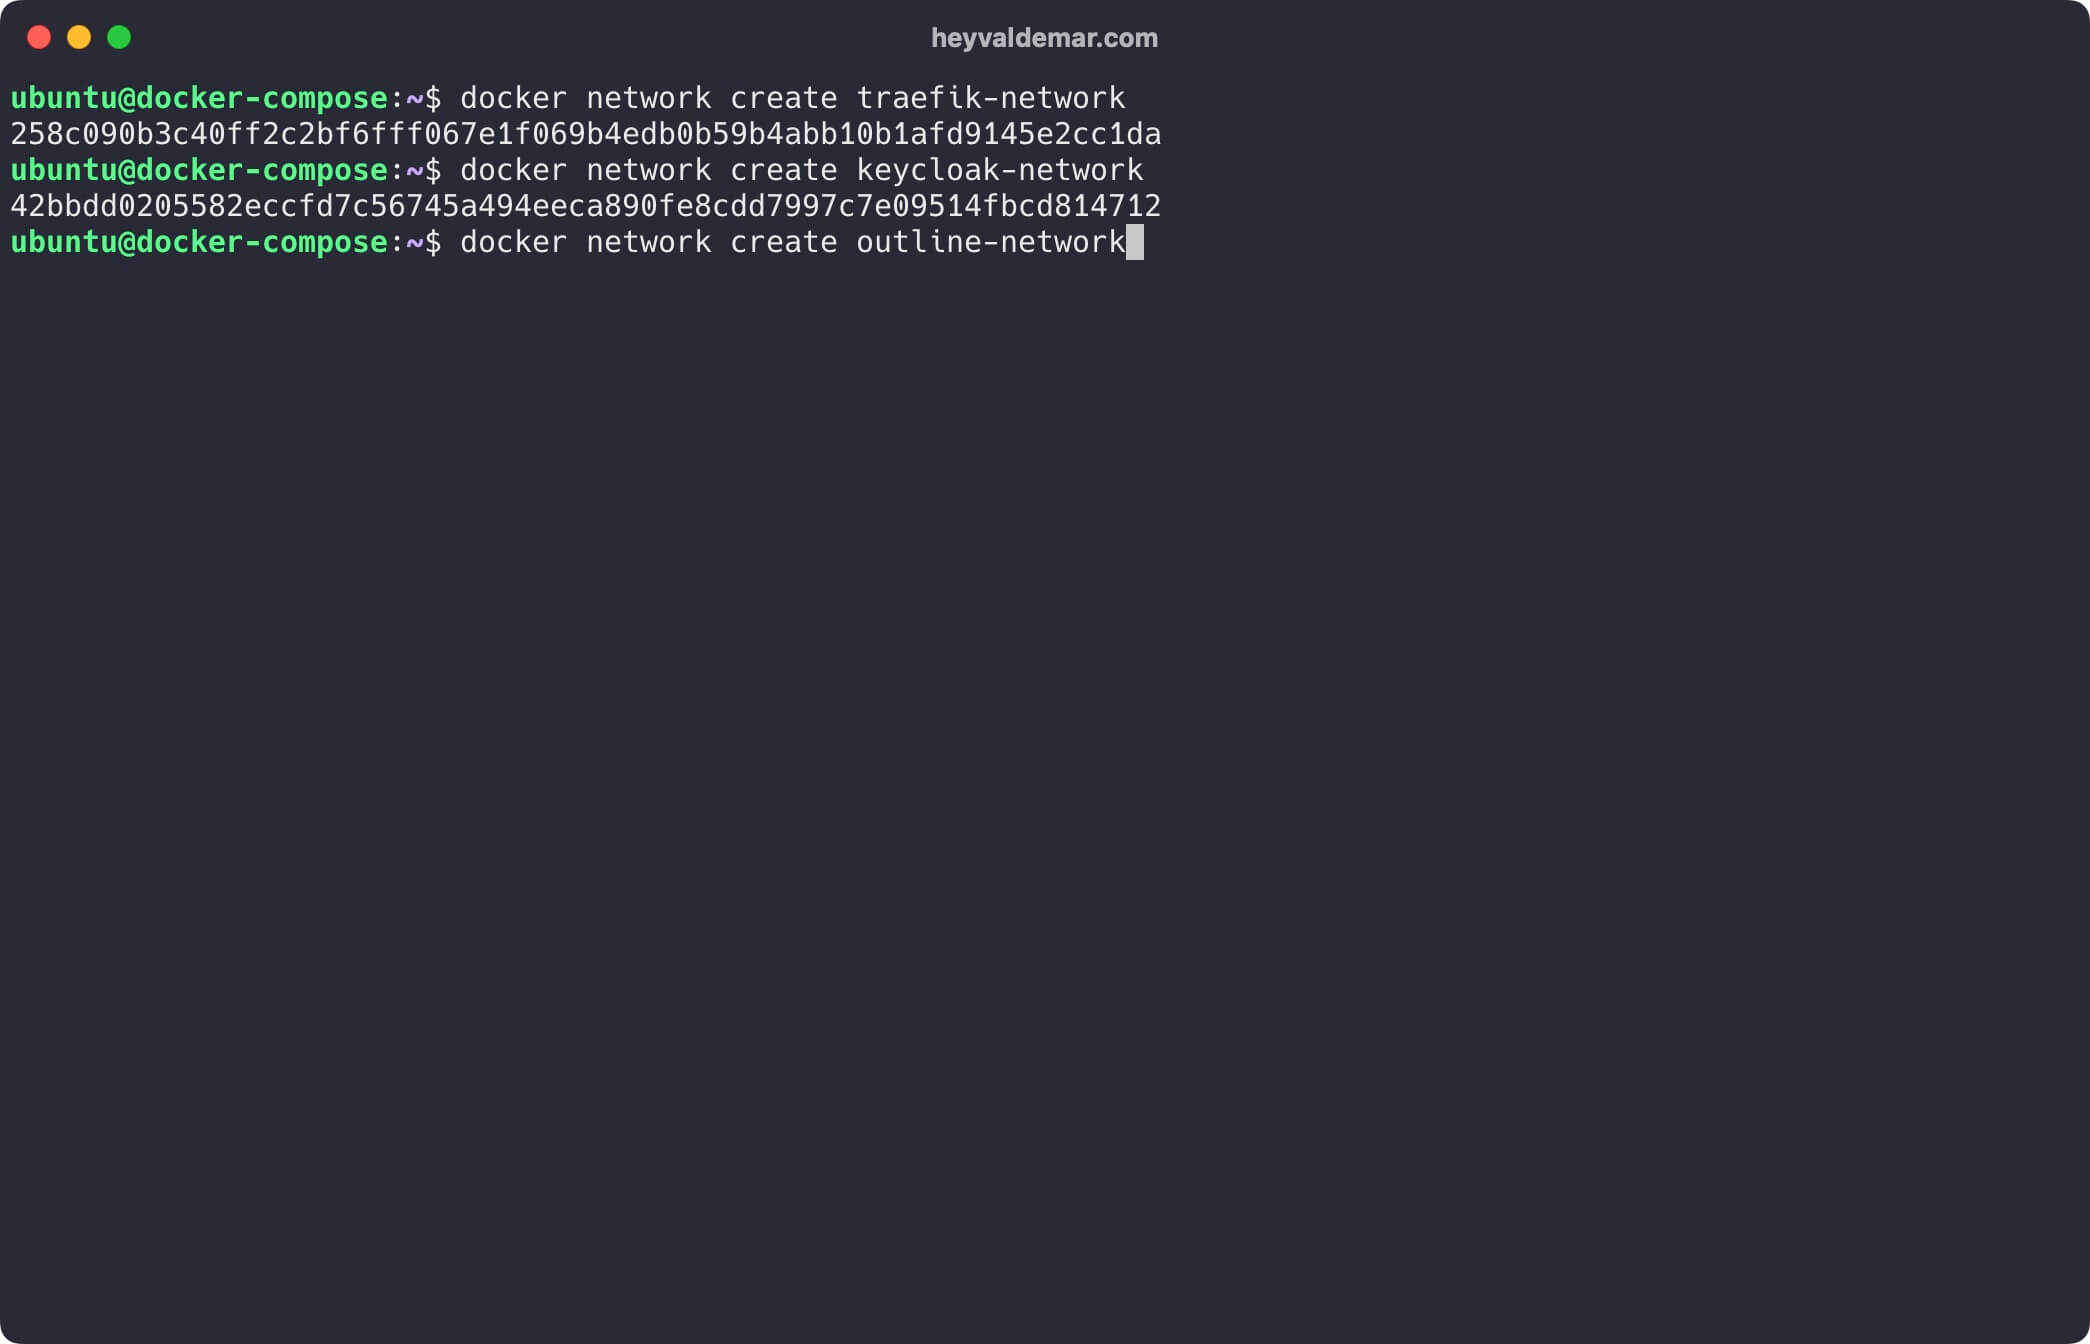 Установка Outline и Keycloak с использованием Docker Compose